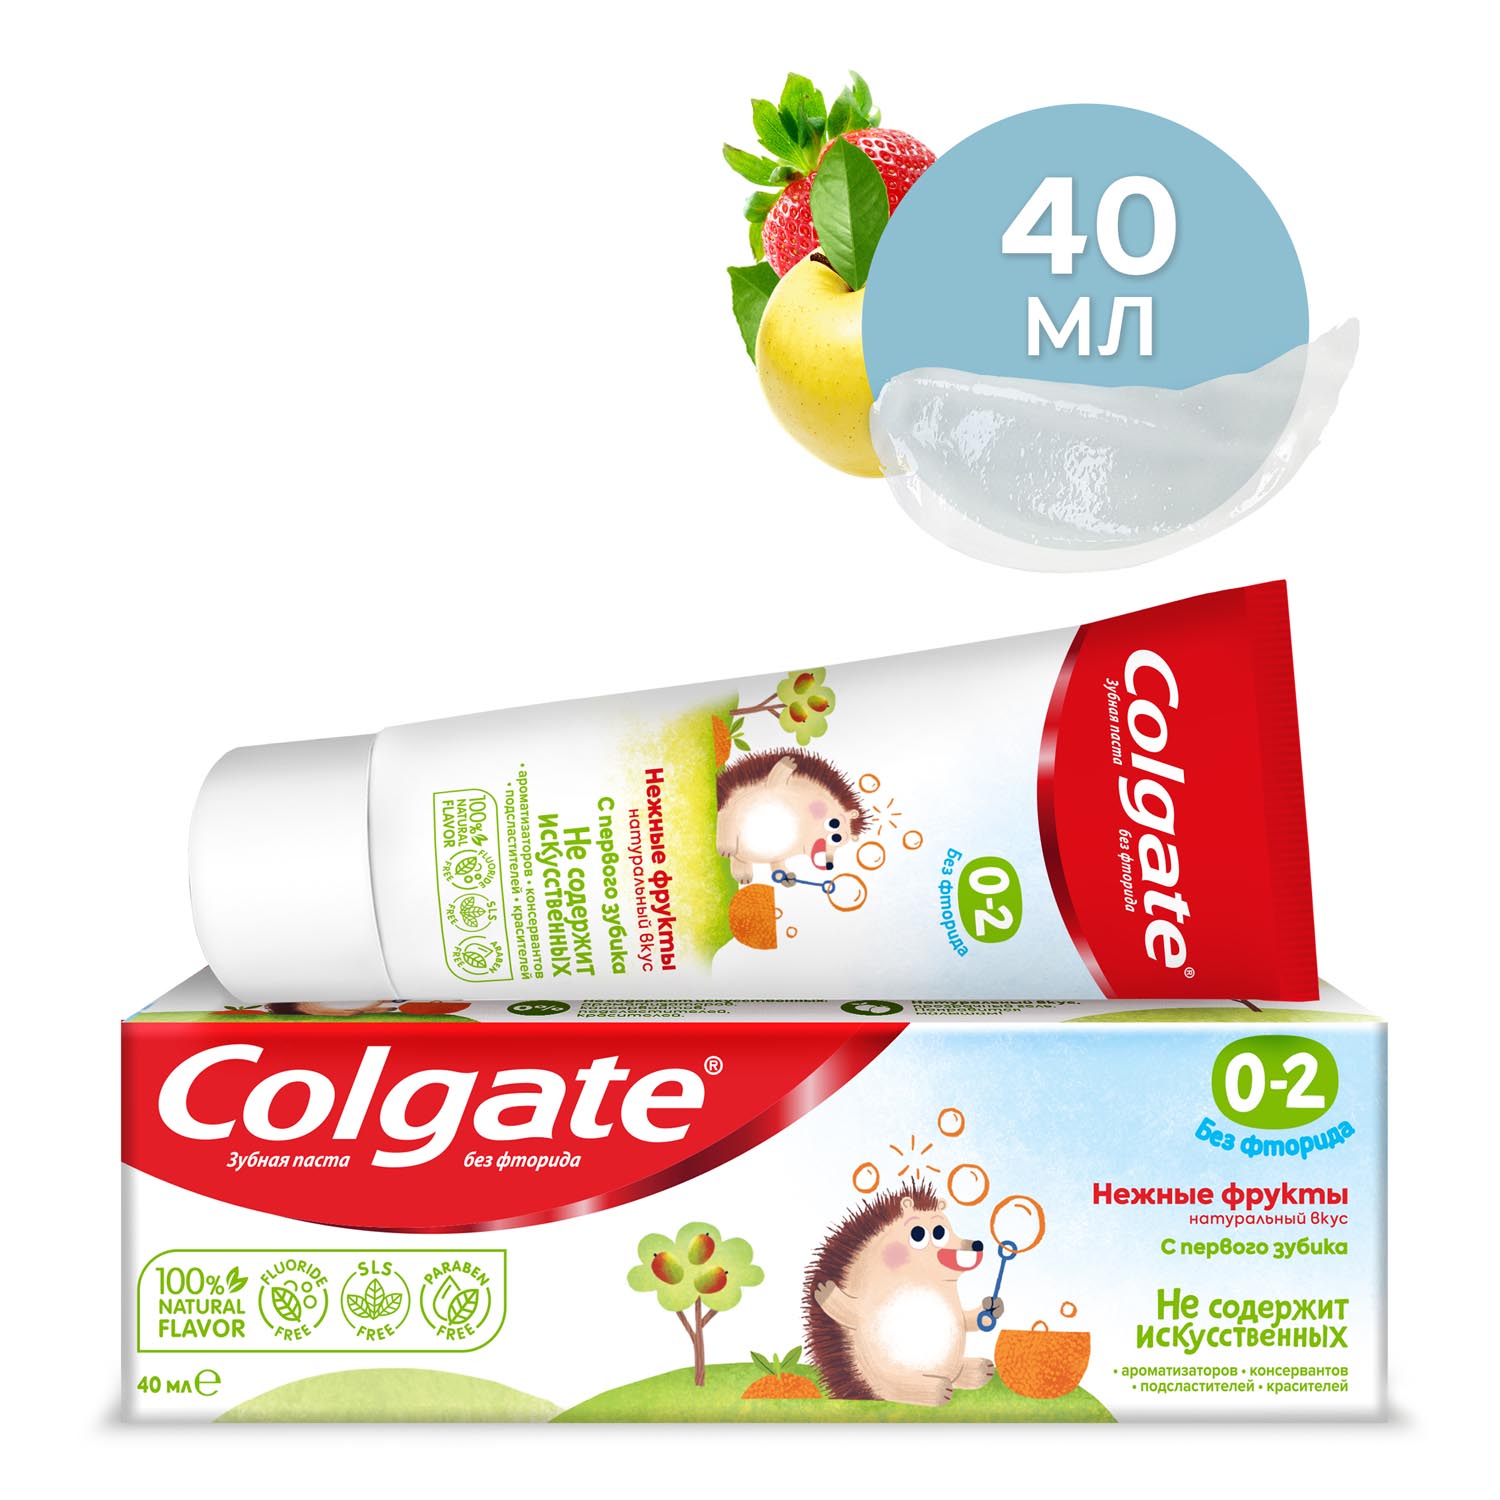 Зубная паста детская Colgate 0-2, без фторида, для детей от 0 до 2 лет, со вкусом нежных фруктов, 40 мл зубная паста детская elmex kids защита от кариеса для детей от 2 до 6 лет 50 мл